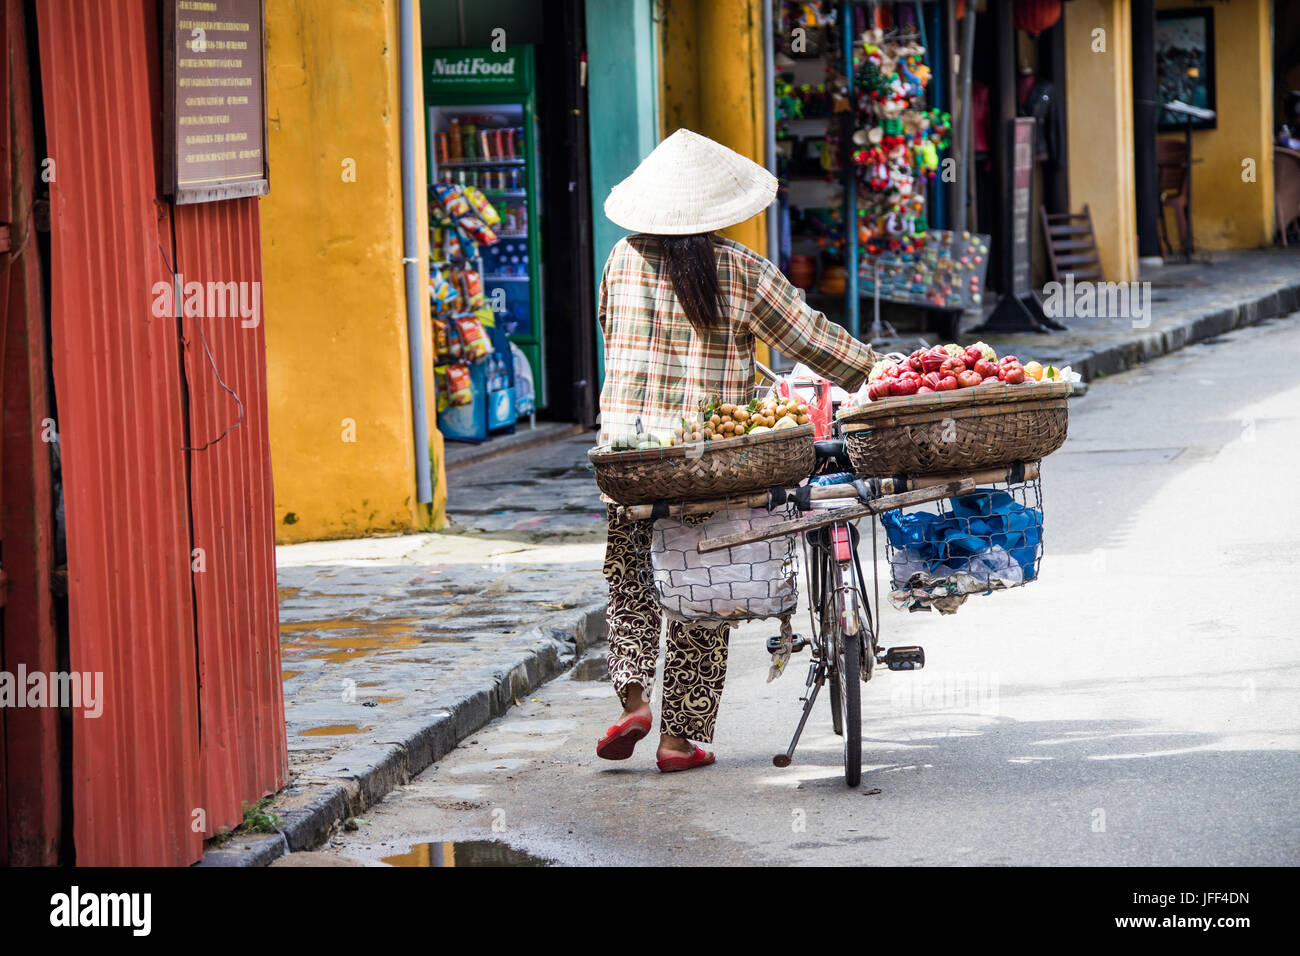 Vendeur de fruits femme portant un chapeau traditionnel, son vélo, marche, Viêt Nam Banque D'Images